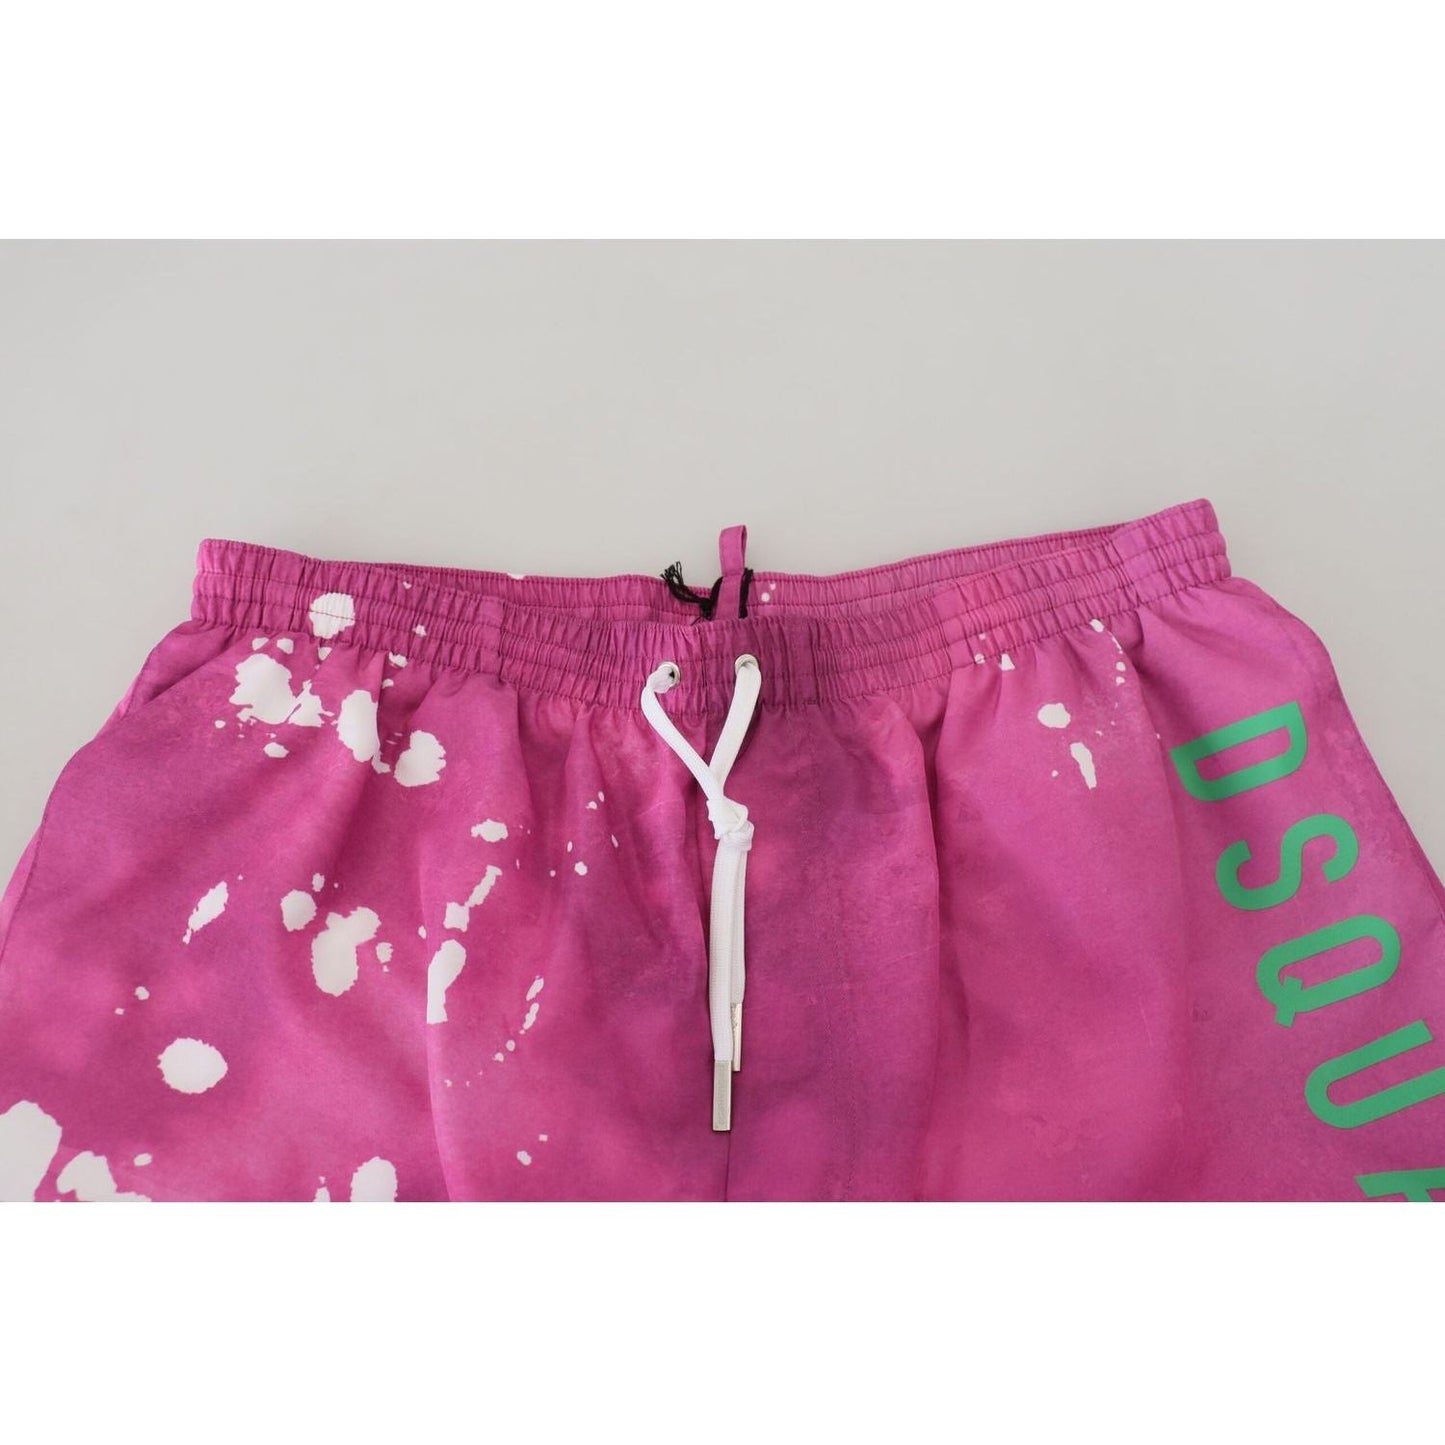 Dsquared² Pink Tie Dye Swim Shorts Boxer pink-tie-dye-logo-men-beachwear-shorts-swimwear IMG_6210-scaled-ddc2e51e-43b.jpg